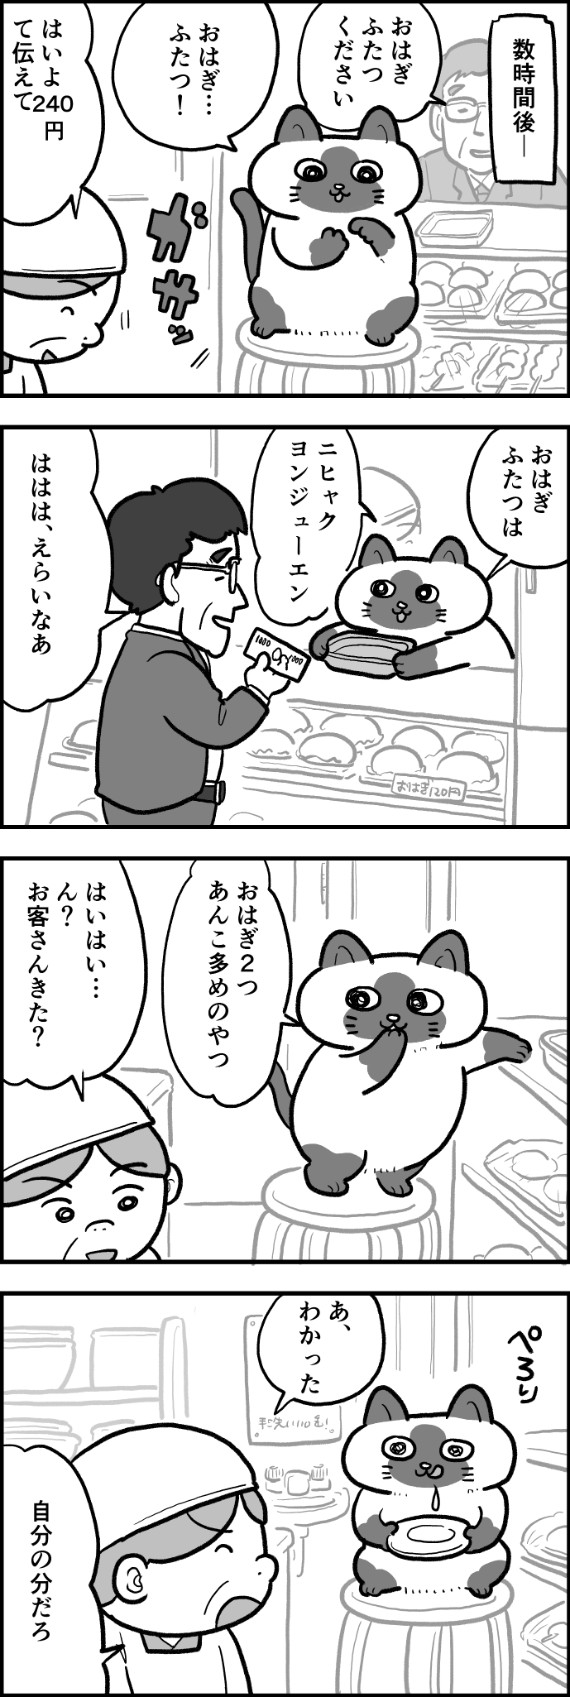 ofukuchan_manga_04_2.jpg